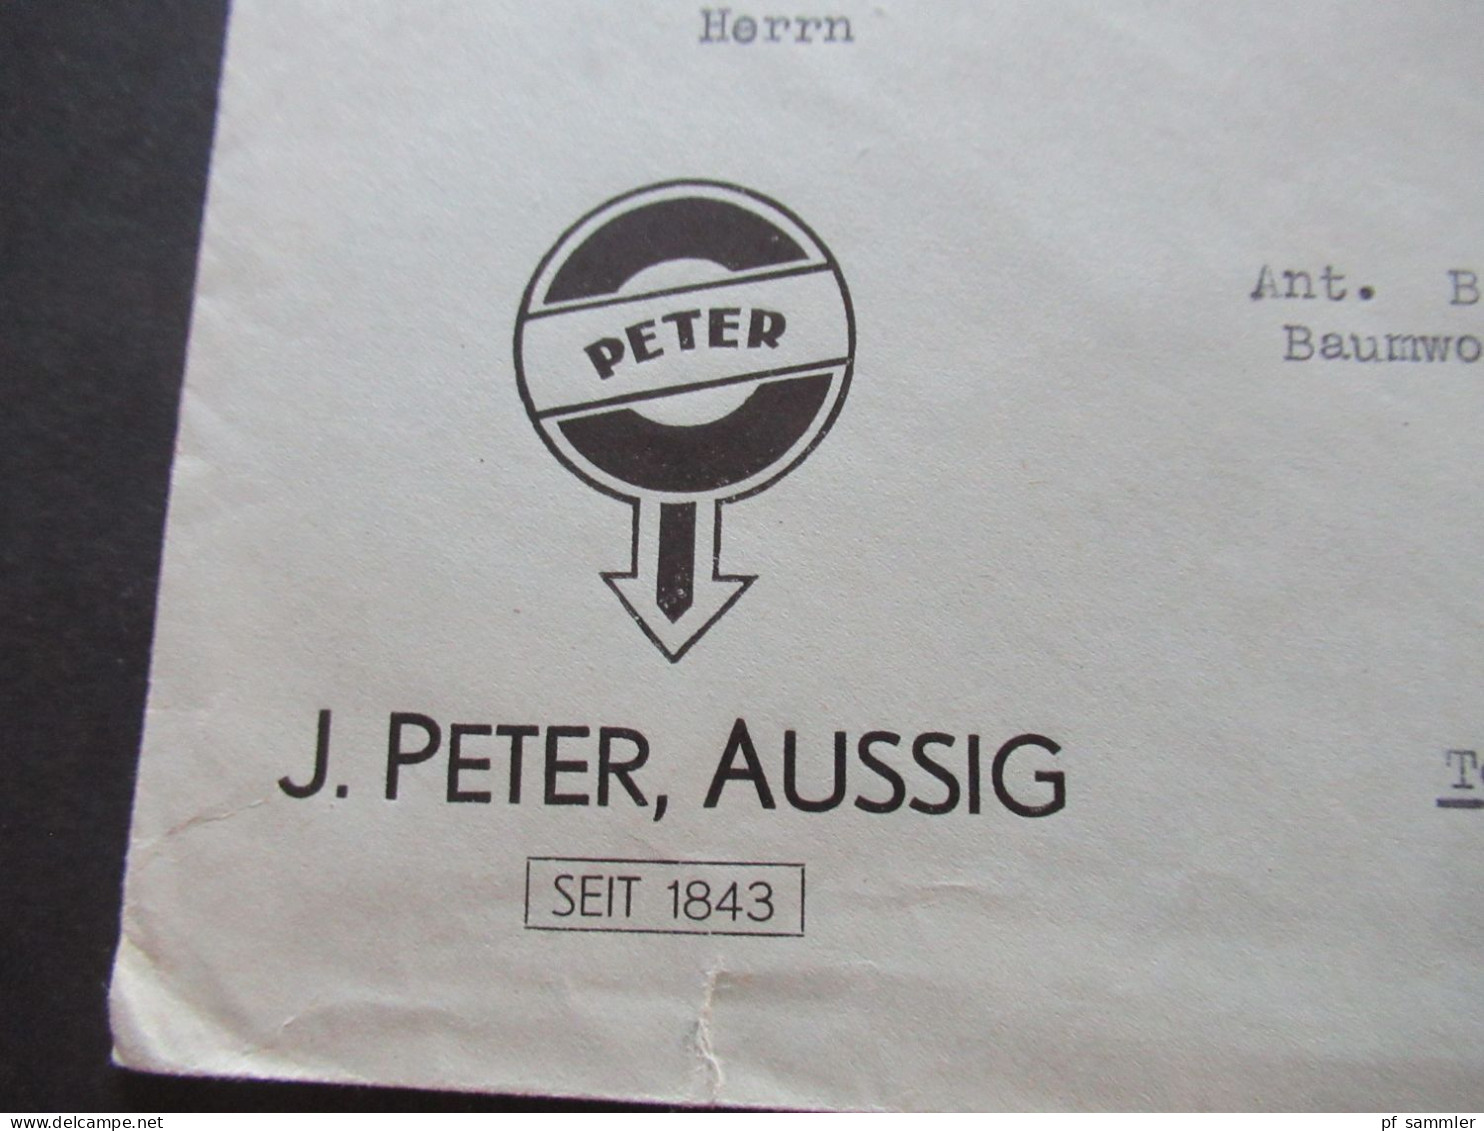 3.Reich Sudetenland 29.10.1938 Violetter Stempel Aussig Umschlag J.Peter Aussig Seit 1843 - Teplitz Schönau - Région Des Sudètes